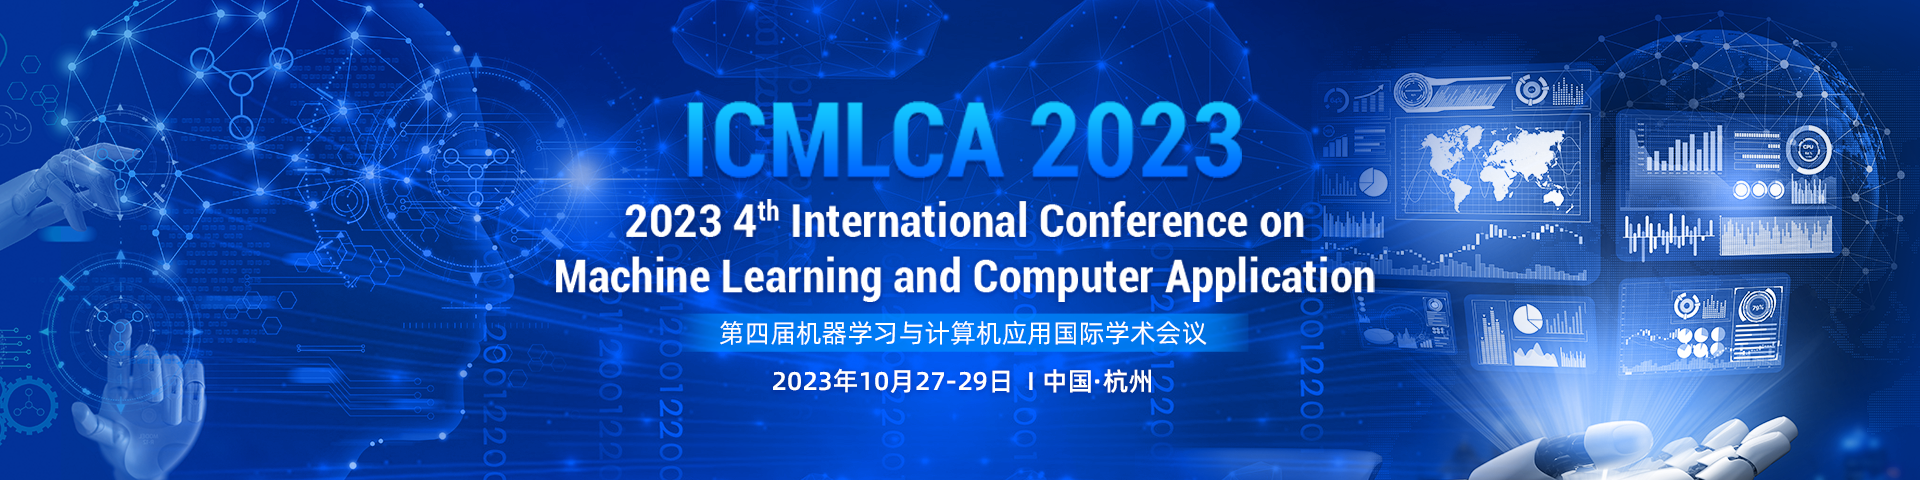 ICMLCA 2023-艾思平台（上线平台）(中文)-陈嘉妍-20230308.png